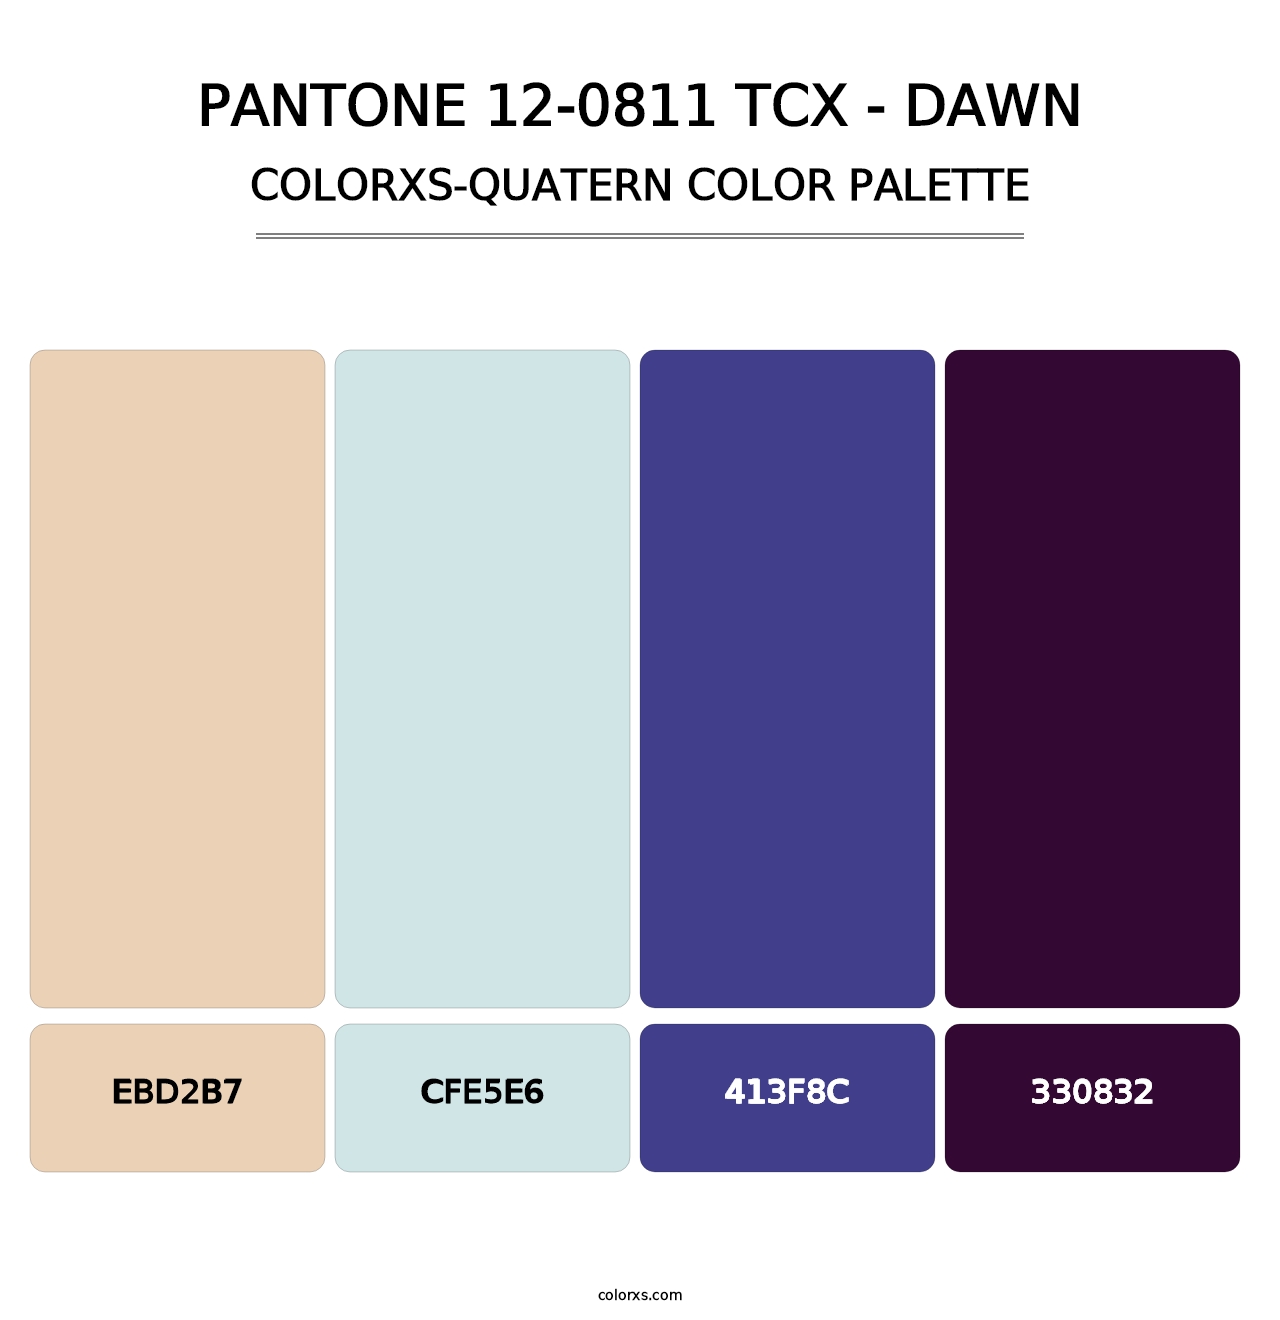 PANTONE 12-0811 TCX - Dawn - Colorxs Quatern Palette